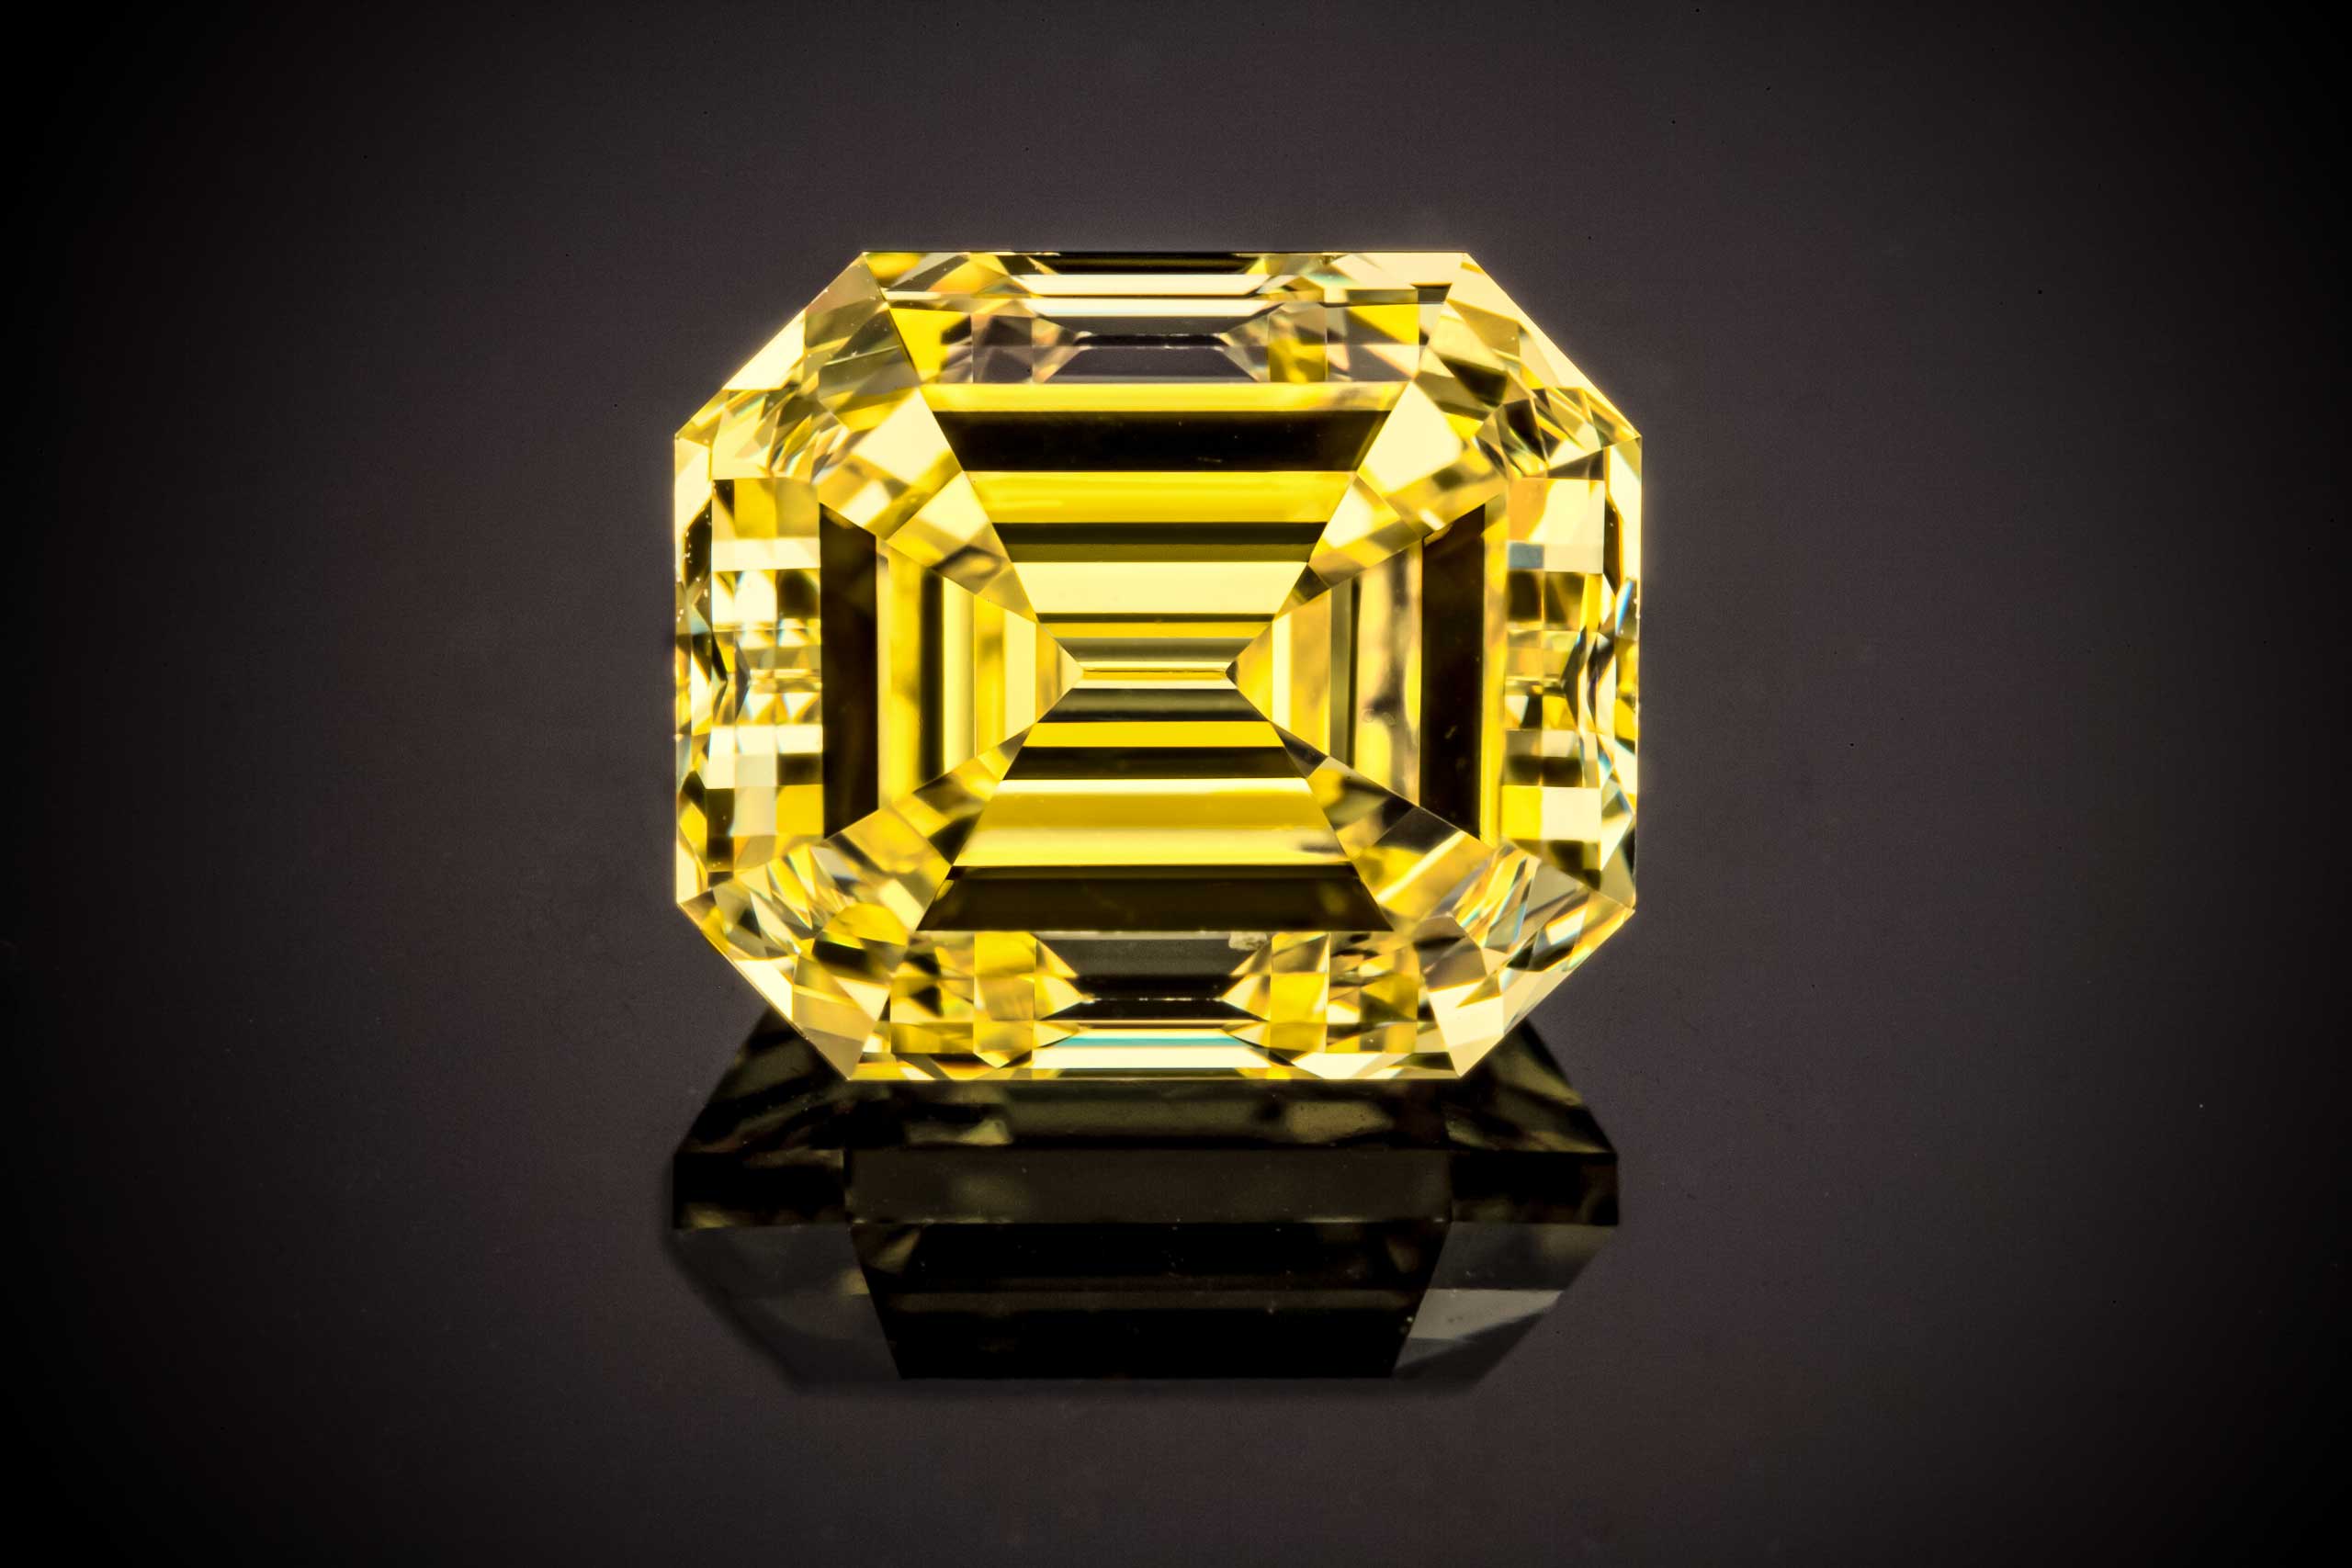 צילום מקרו של יהלום צהוב גדול במיוחד חיתוך מלבני יפייפה ונקי